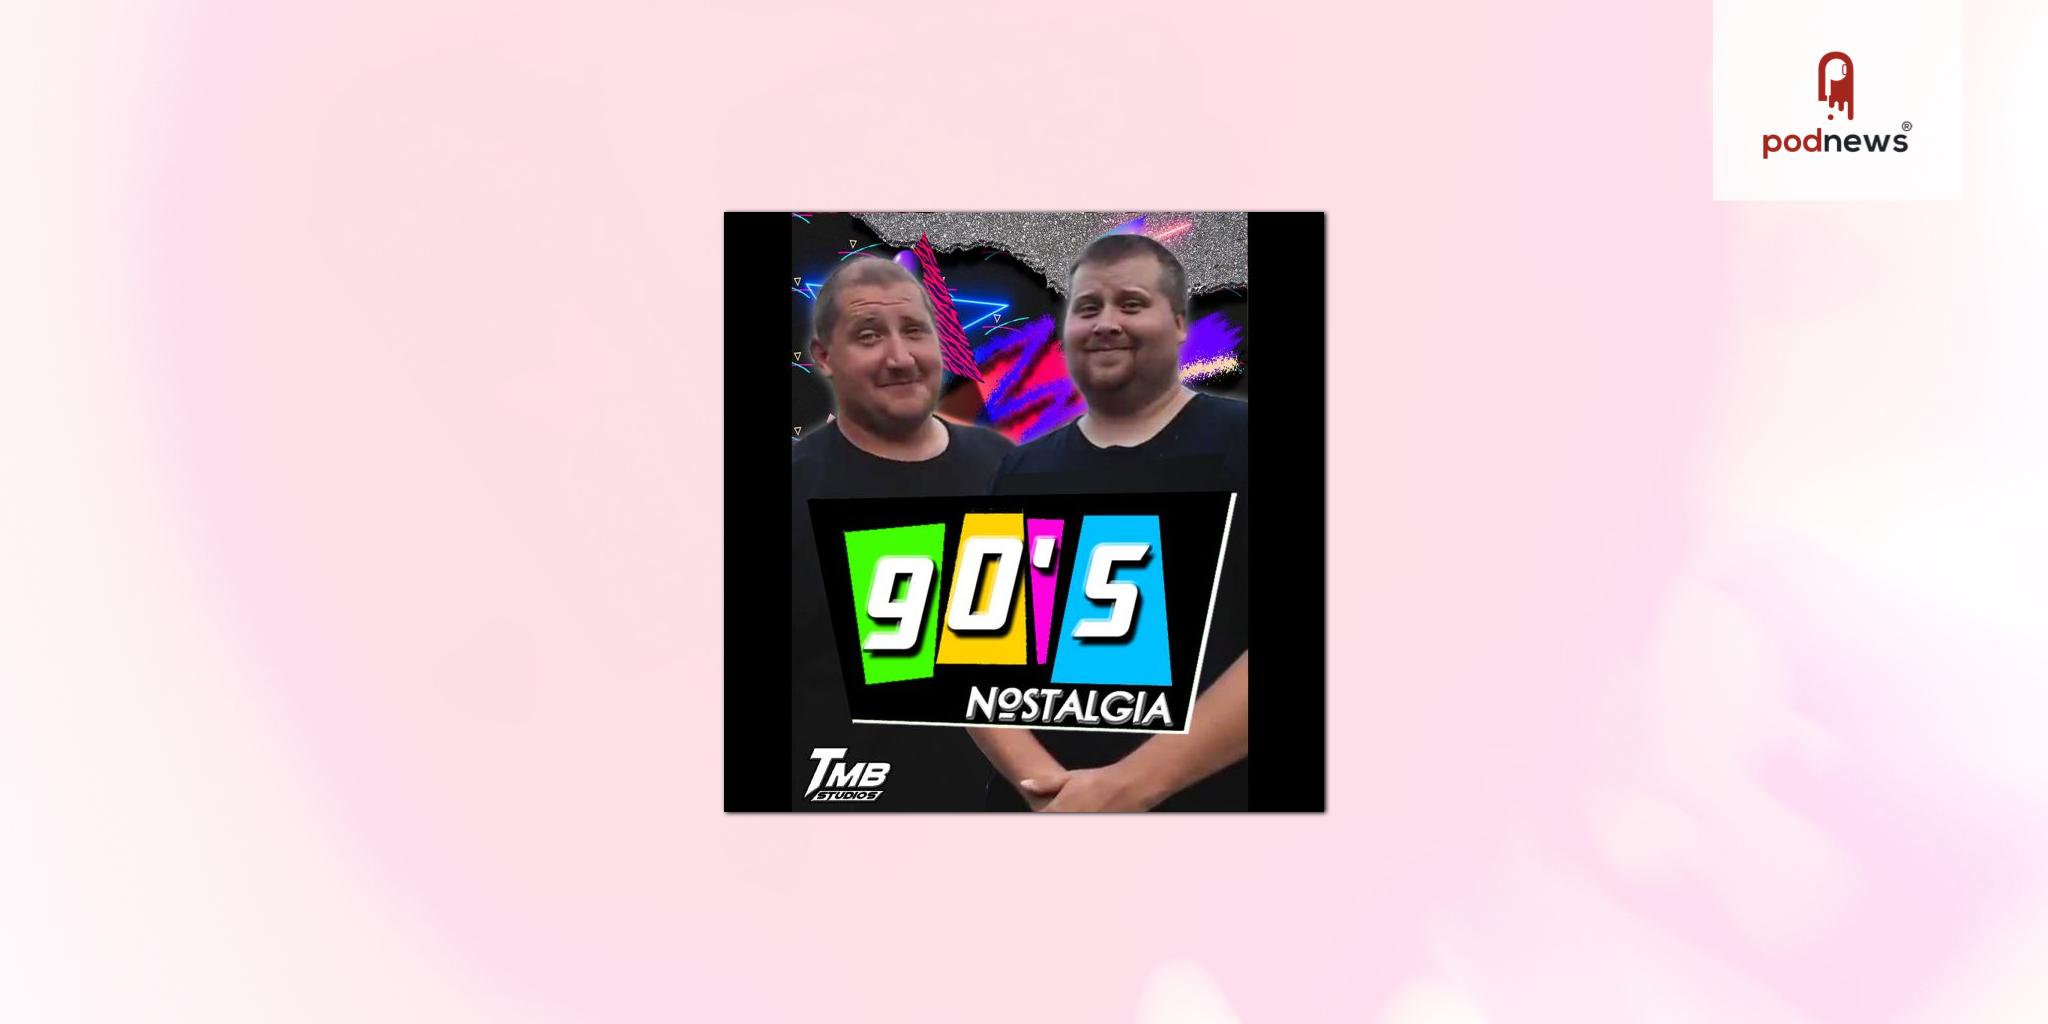 nostalgia 90s tv